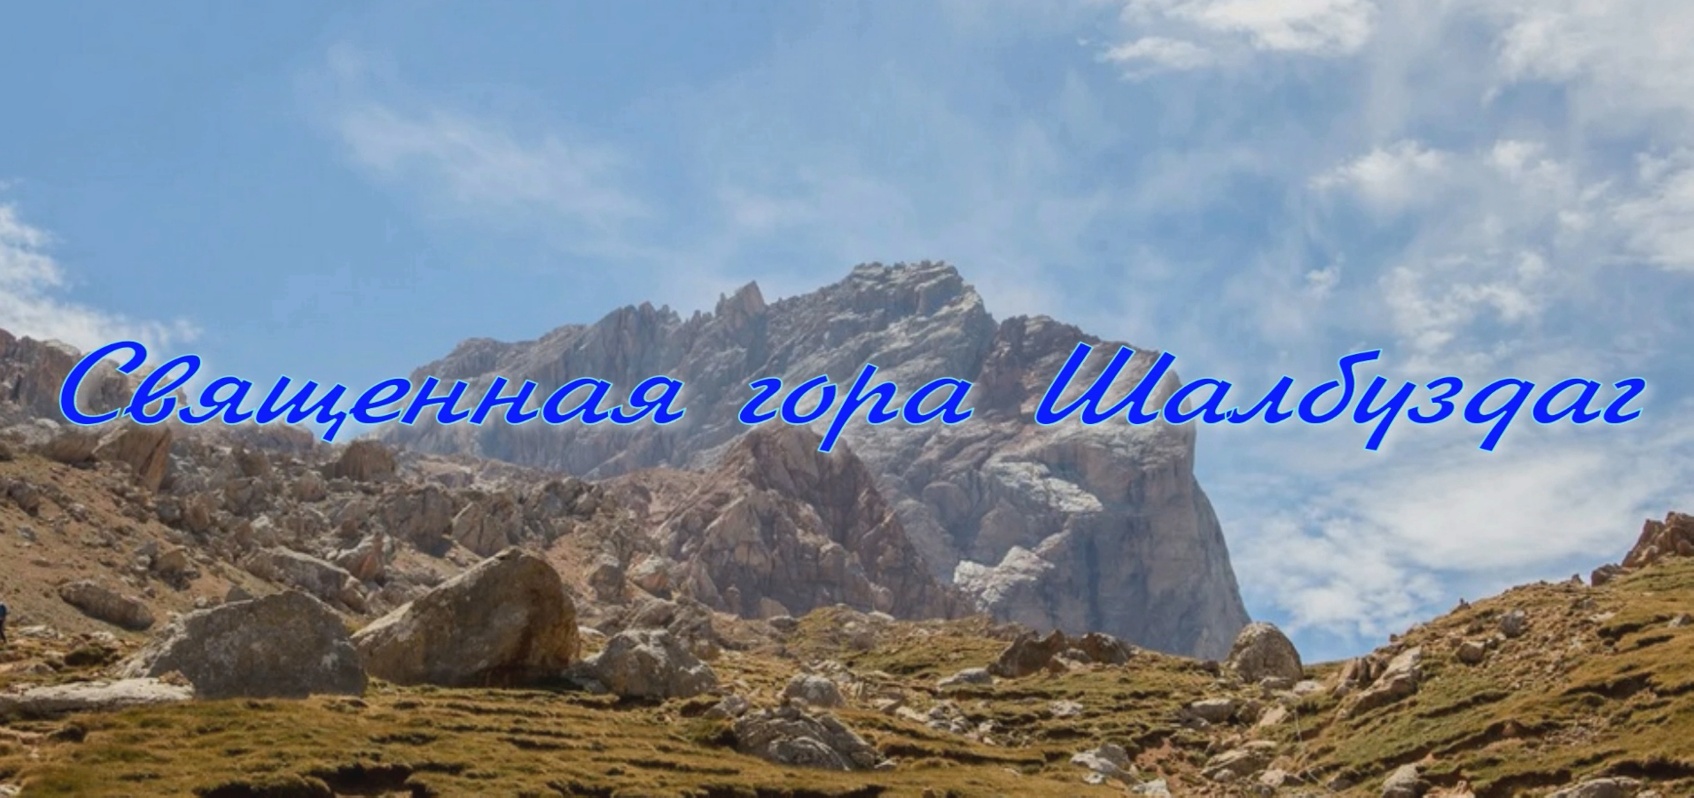 Священная гора Шалбуздаг в Дагестане